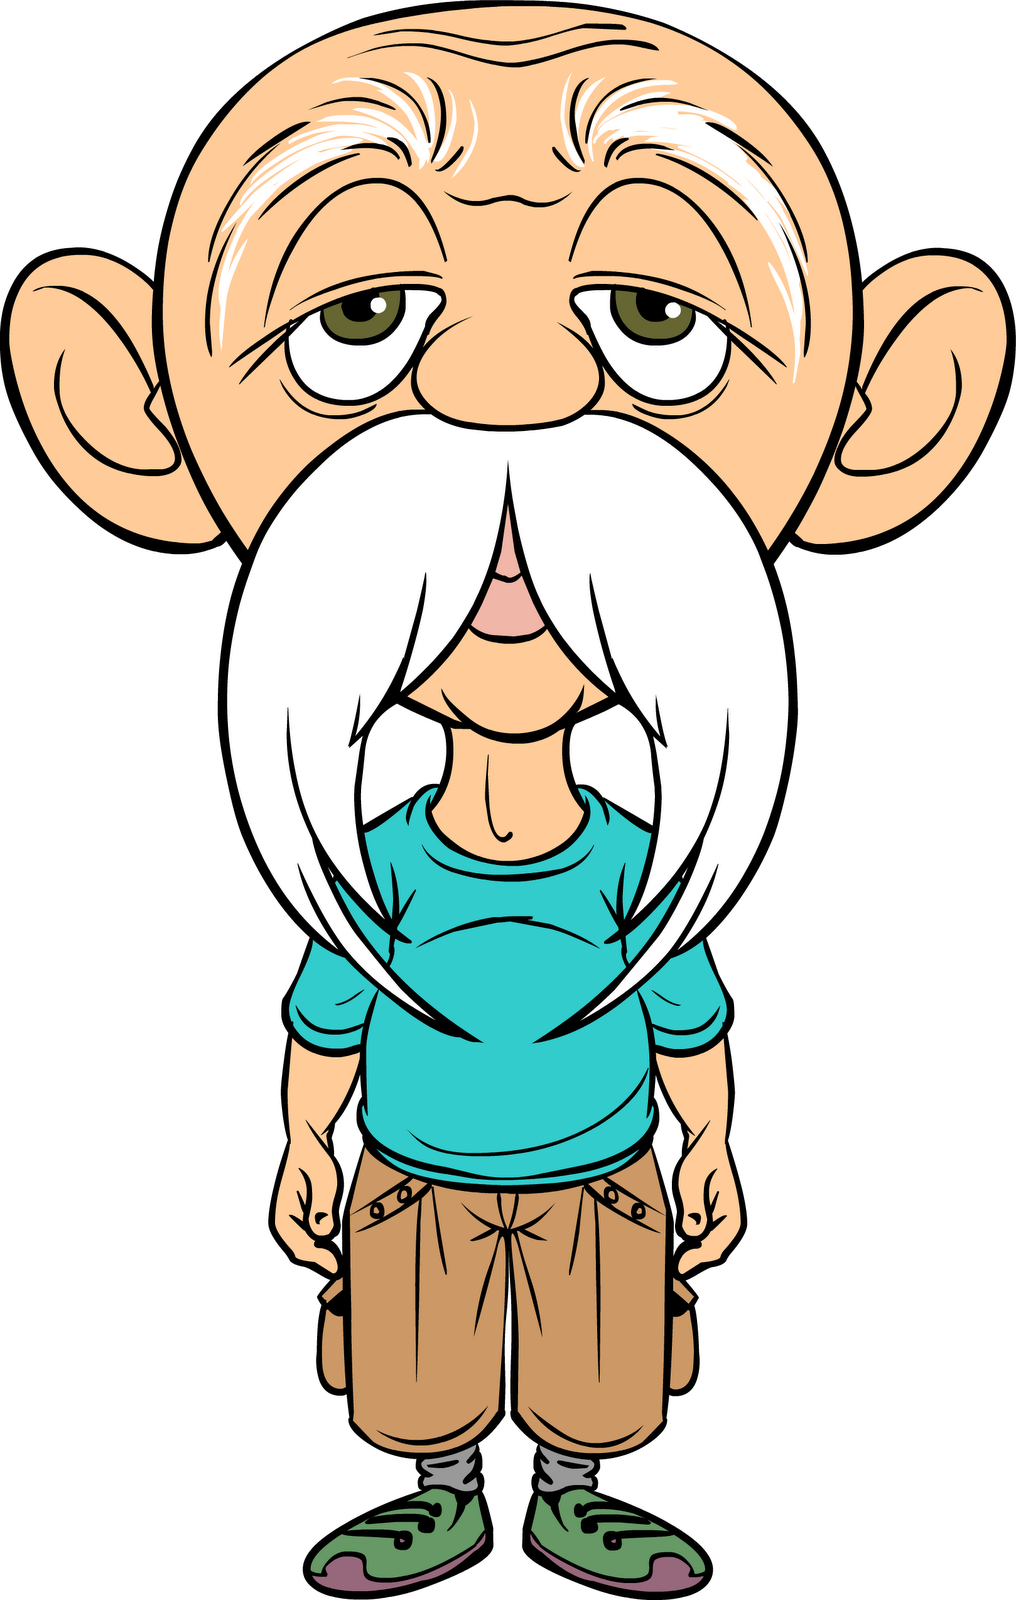 Free Cartoon Old Man, Download Free Cartoon Old Man png images, Free